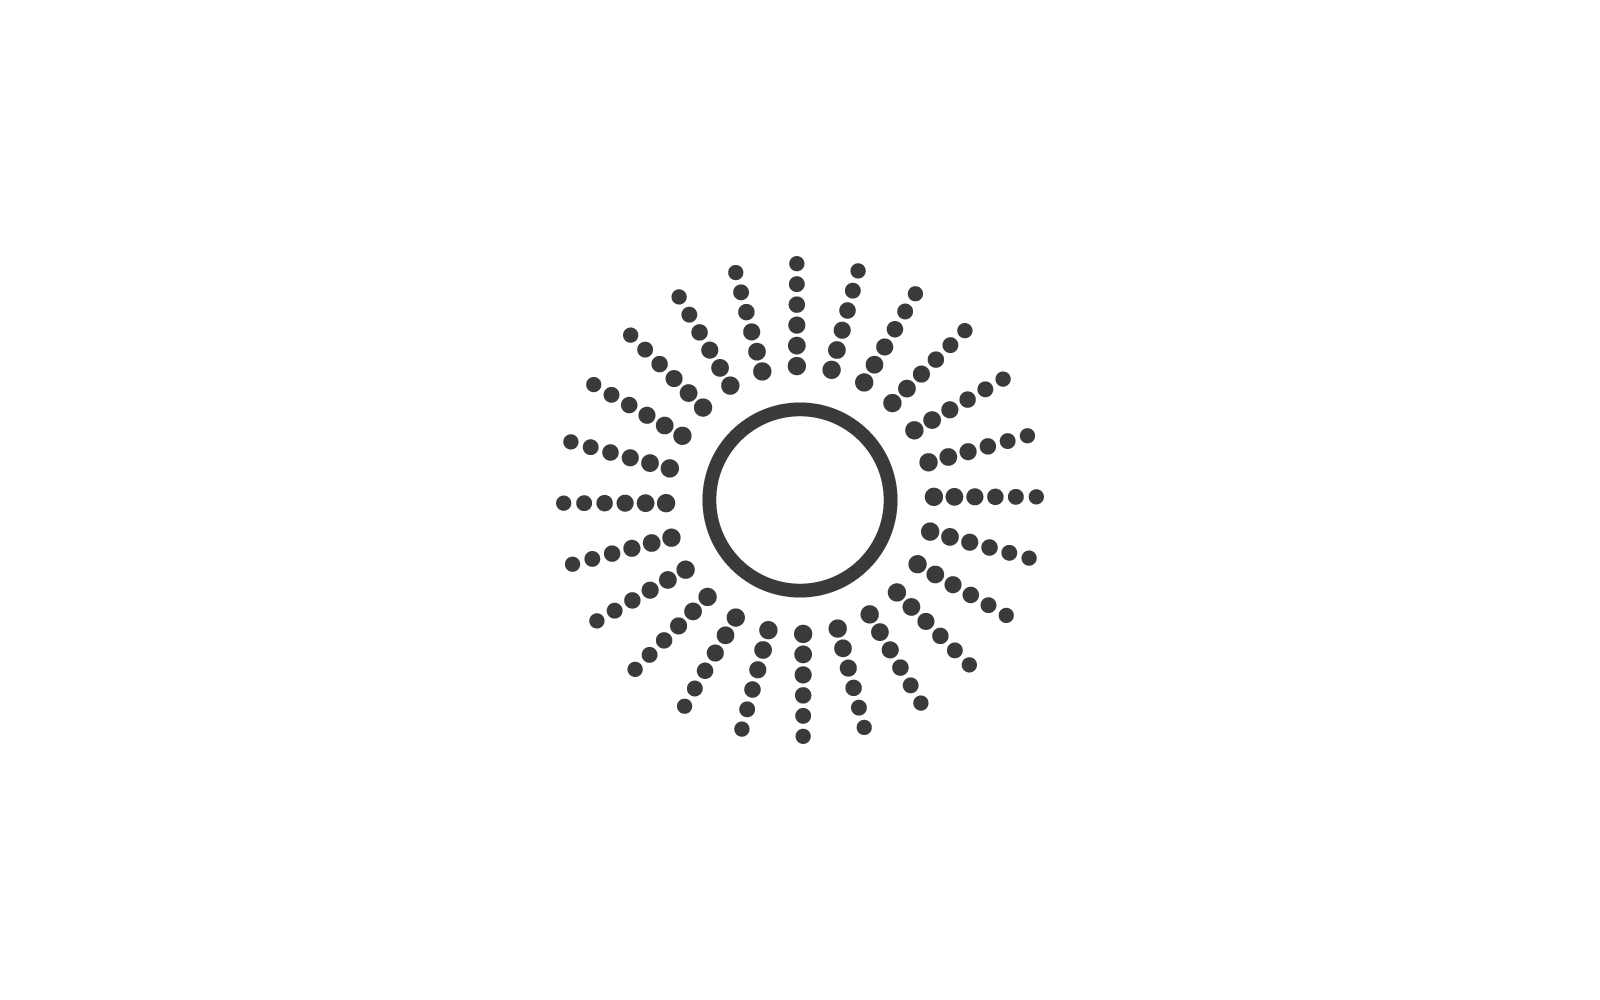 Conception d'illustration vectorielle d'icône de rayon de soleil